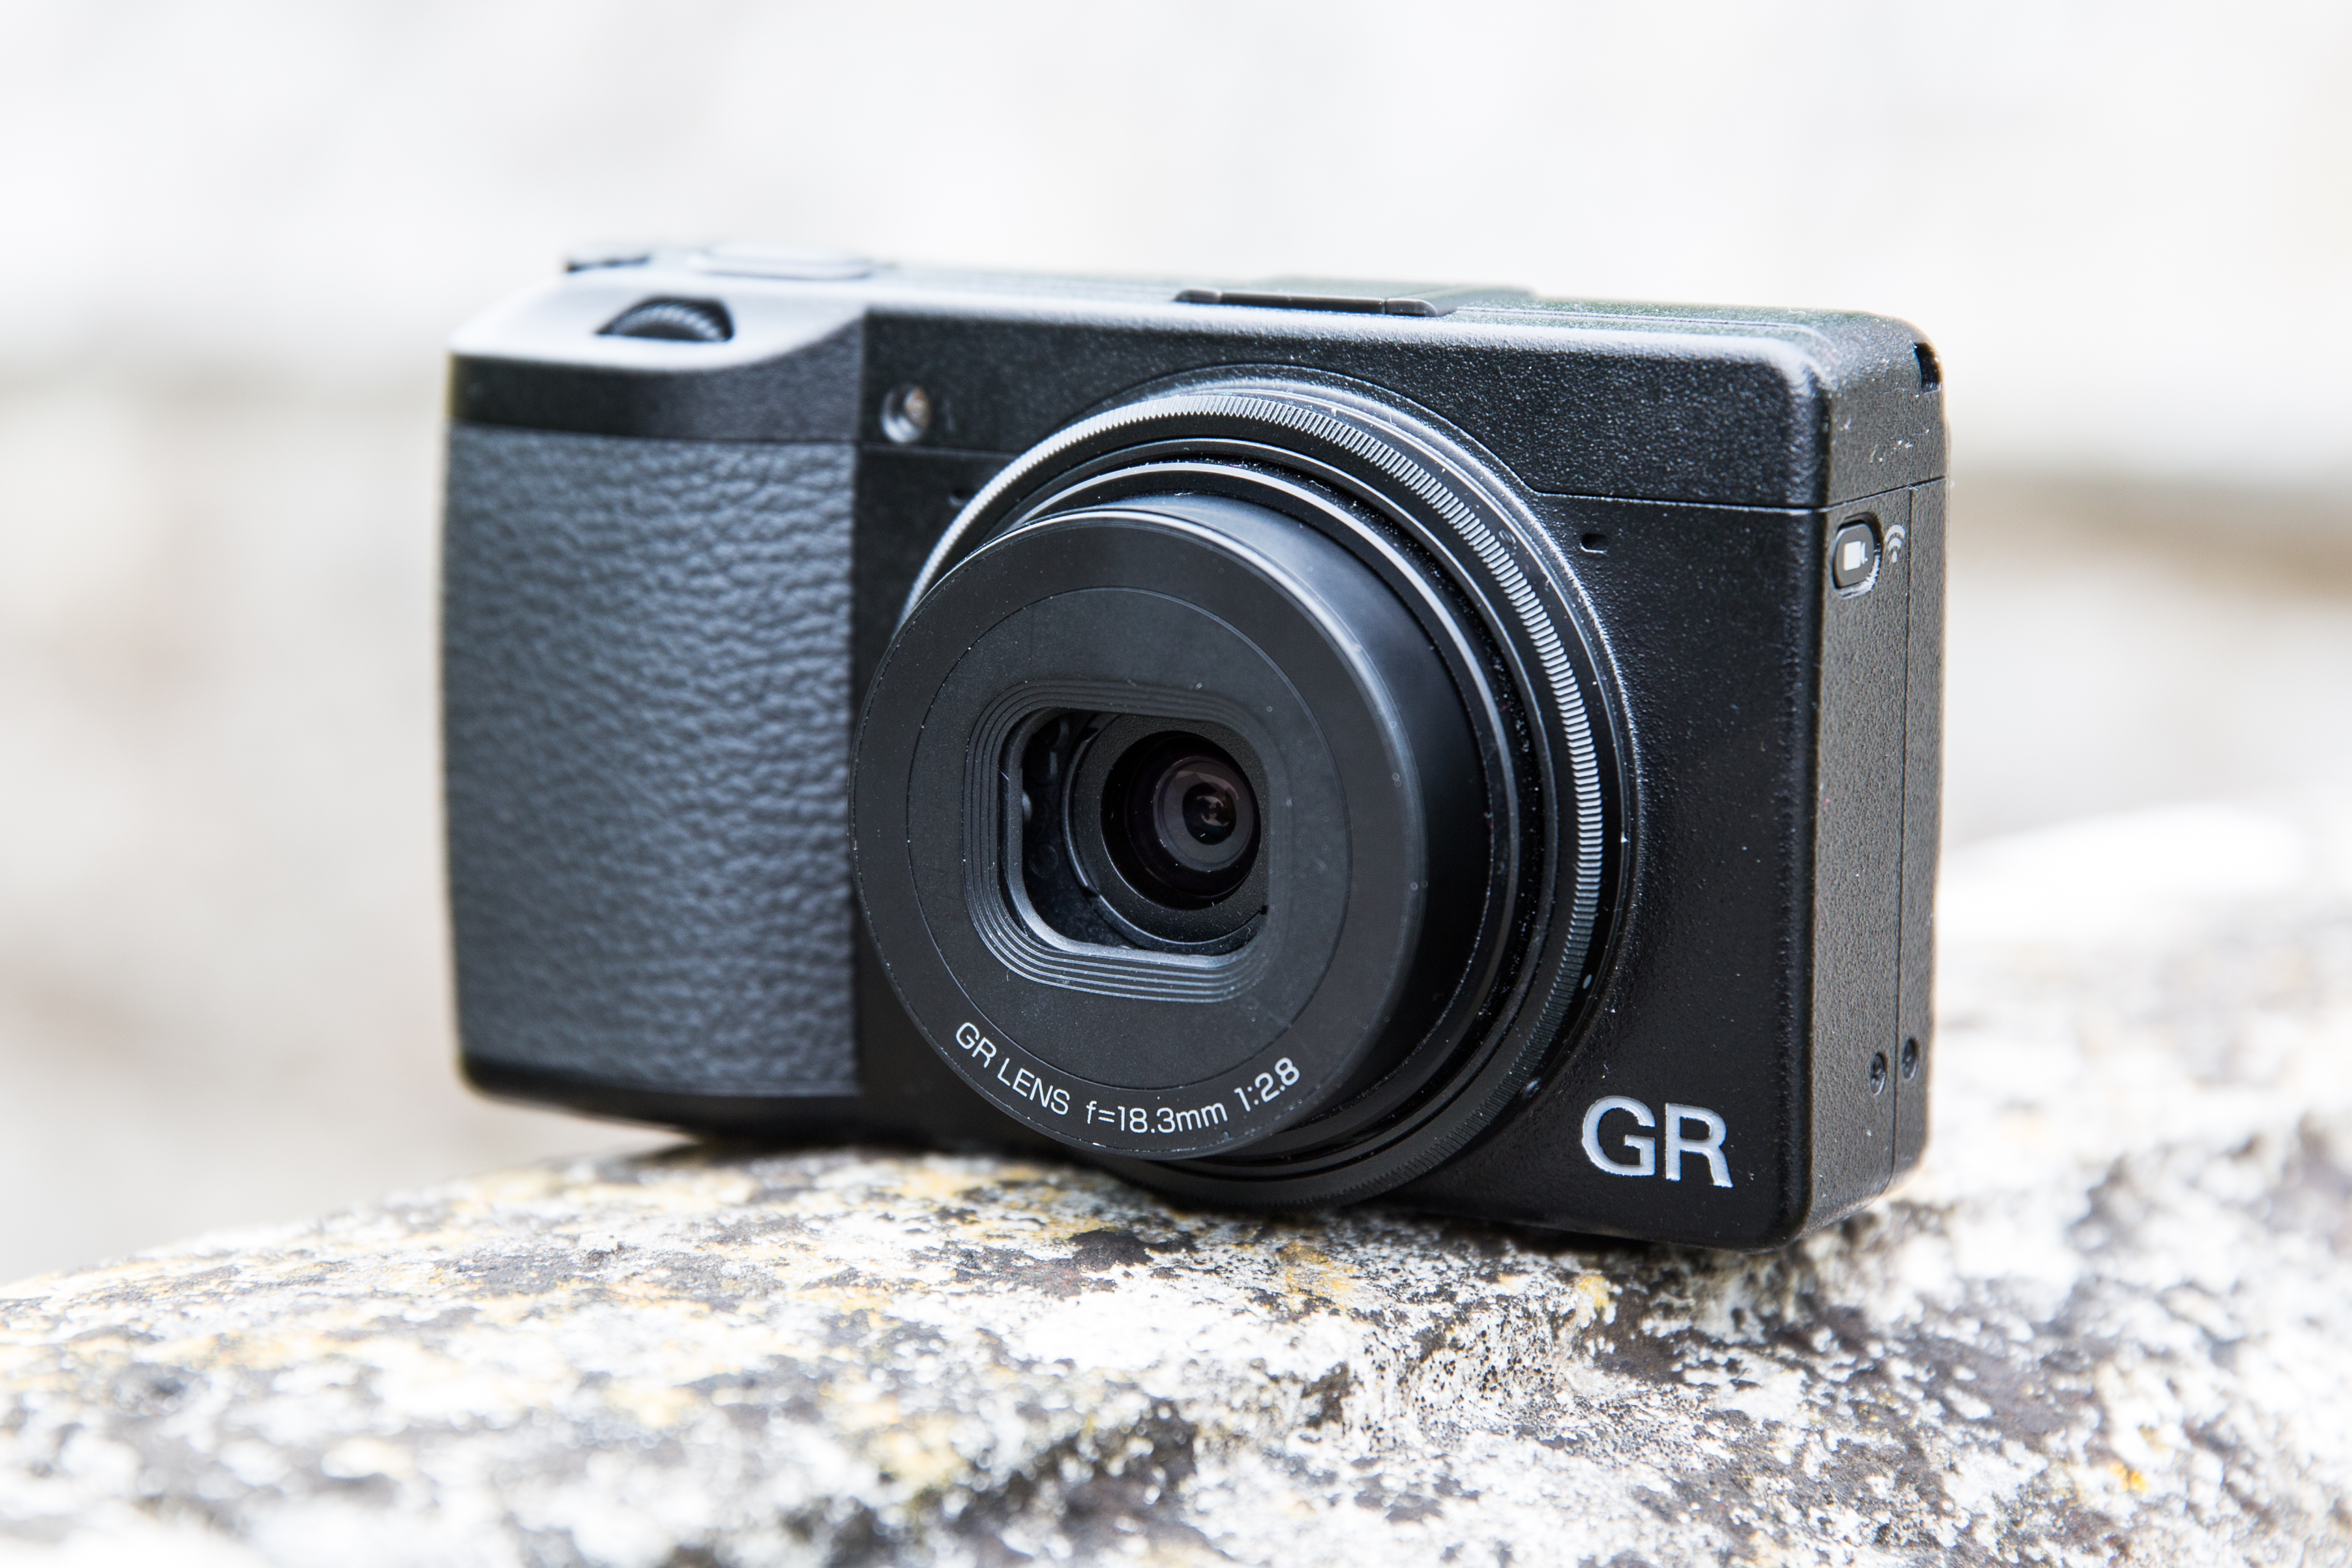 Ricoh GR III review - Amateur Photographer